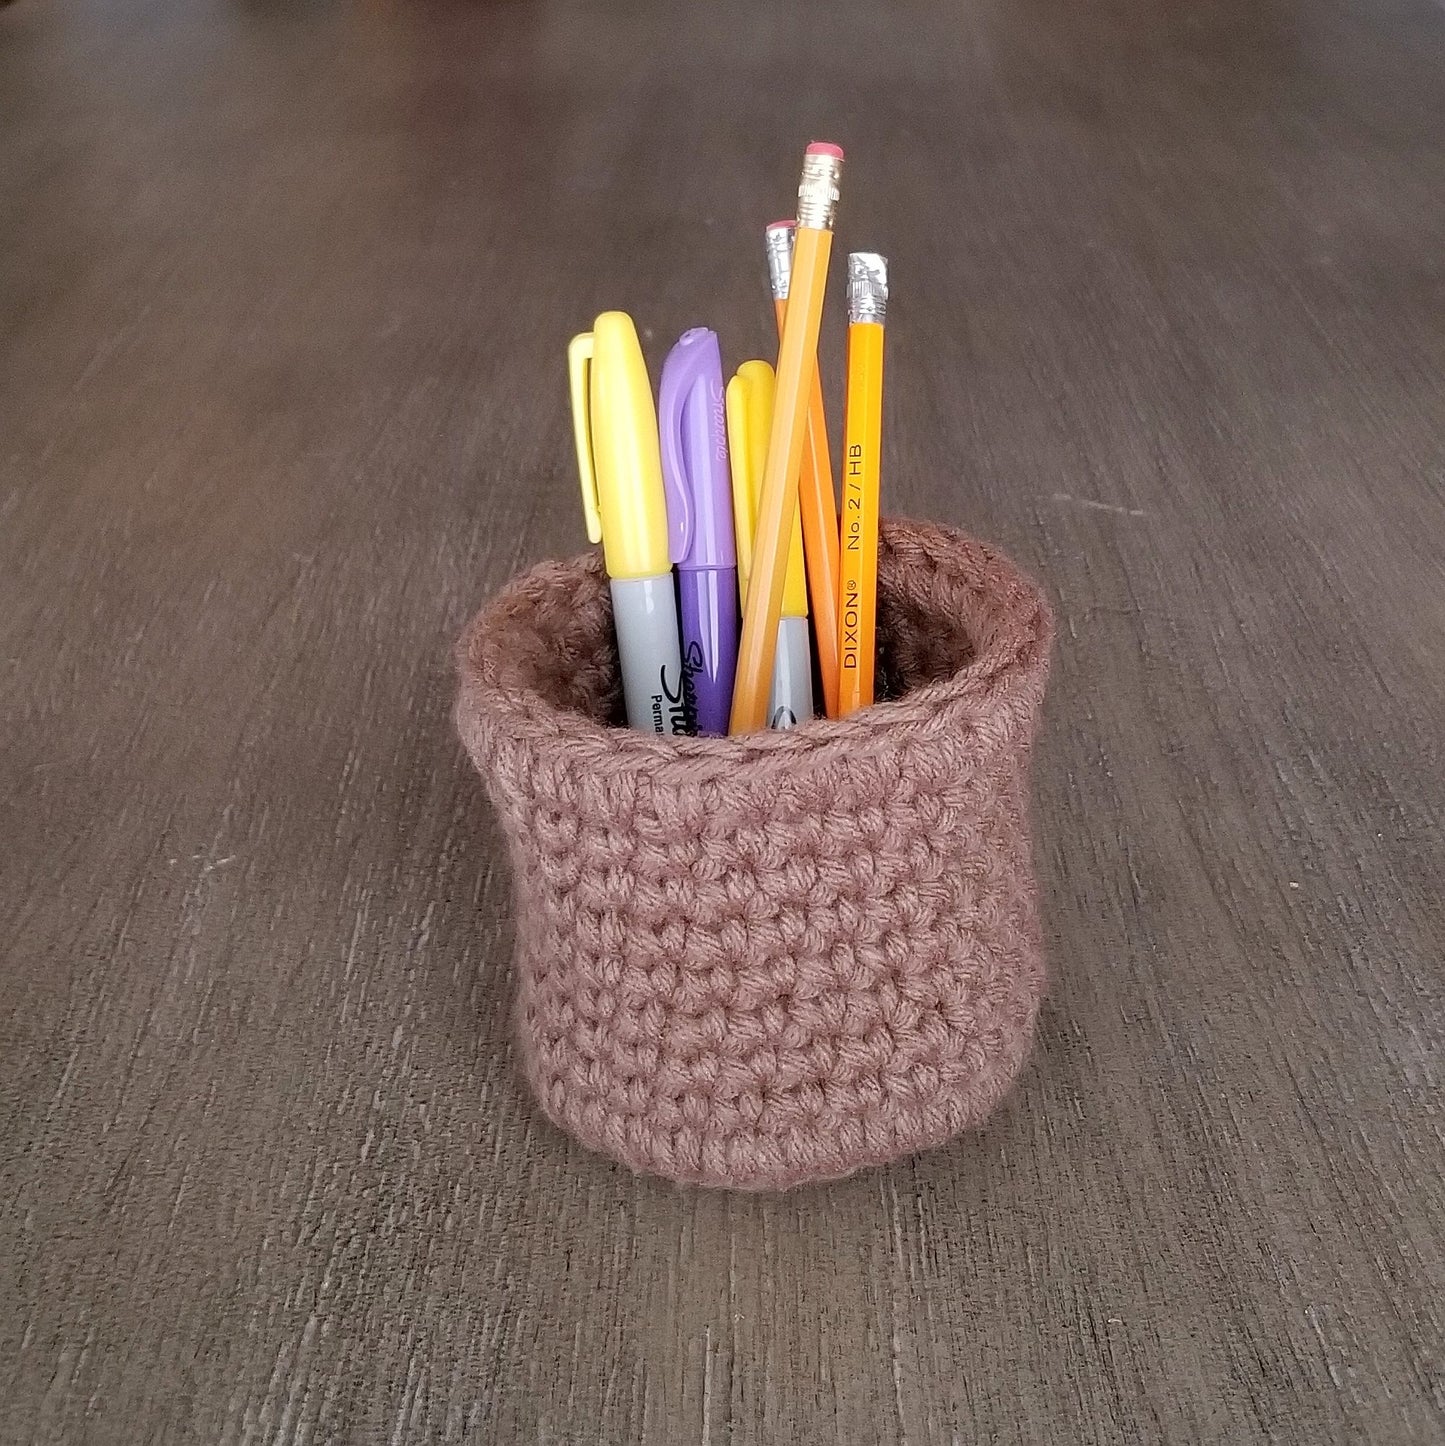 FREE Phemia journal pen holder: Crochet pattern